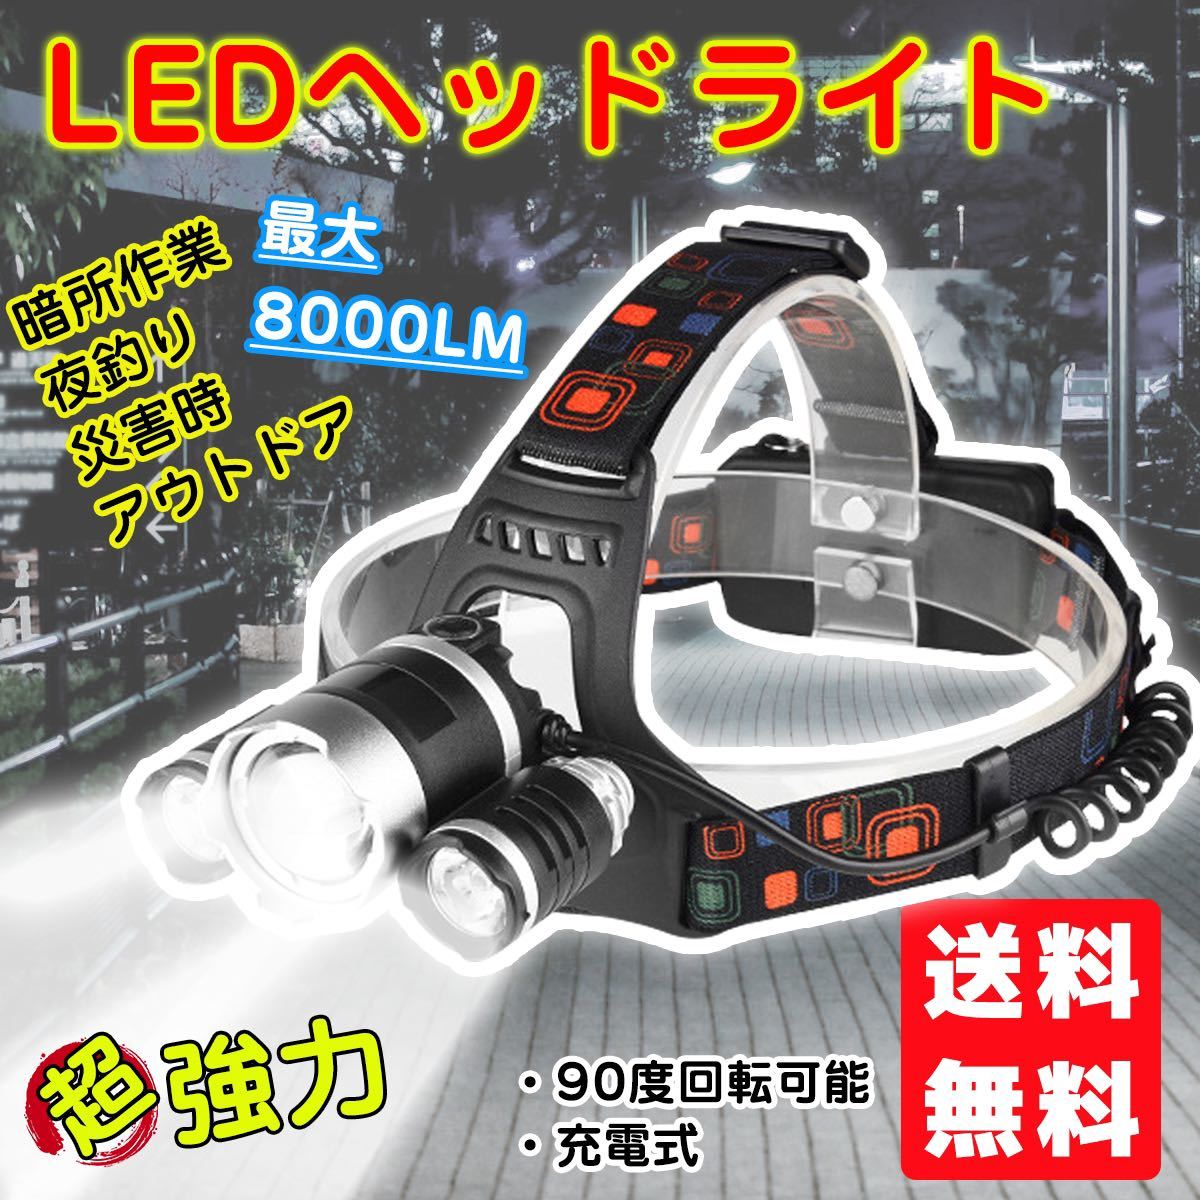 LEDヘッドライト ヘッドランプ LEDライト 充電式 高輝度 キャンプ 防水 軽量